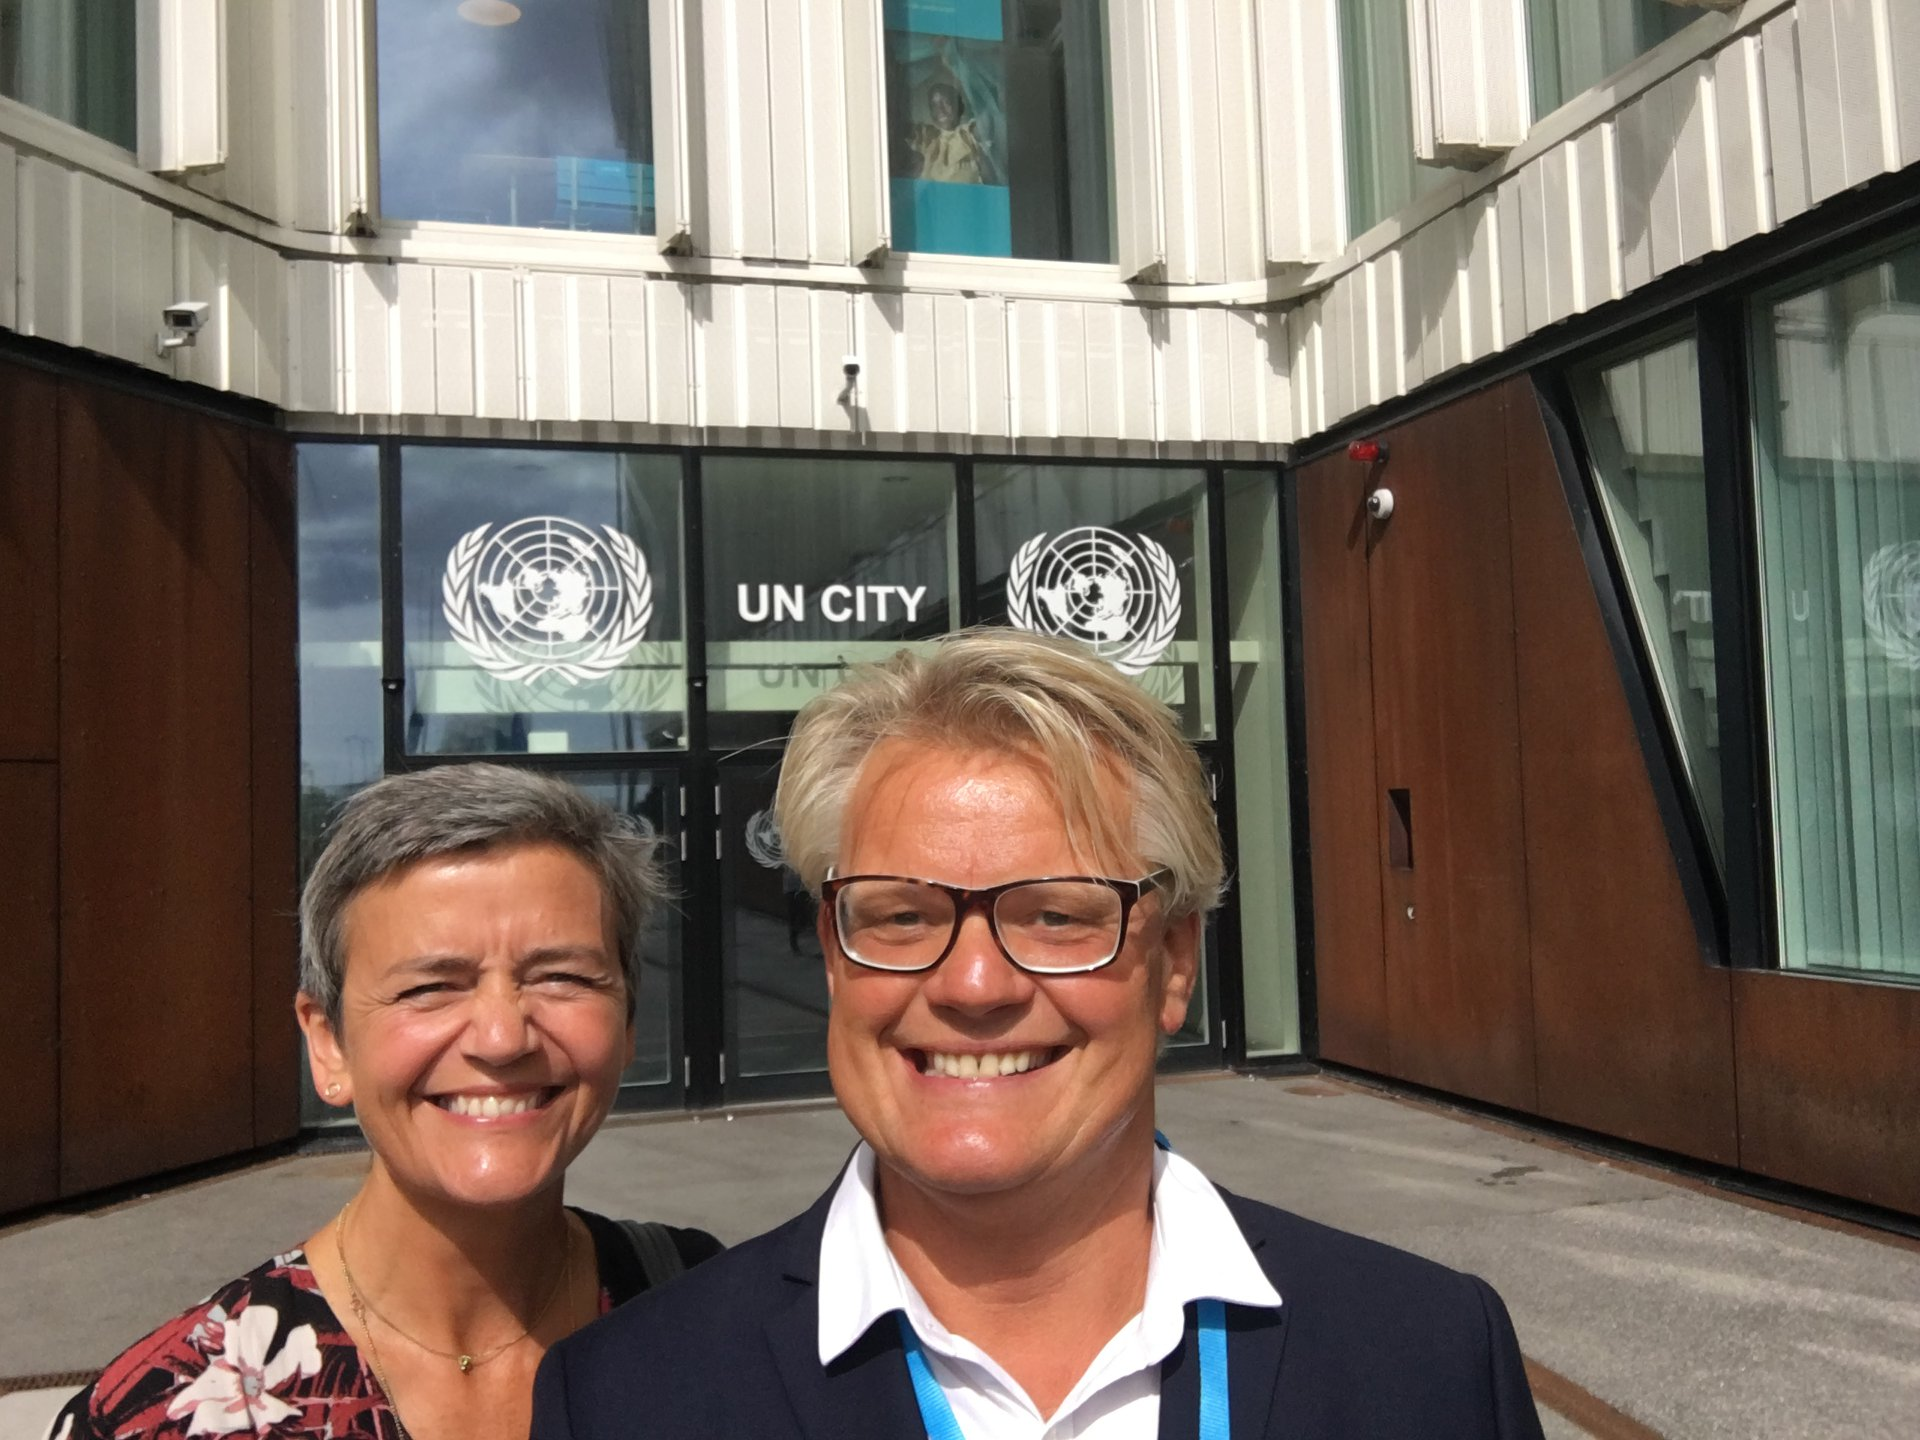 Asbjørn sammen med EU-kommissær Margrethe Vestager før de skal tale på samme FN-konference